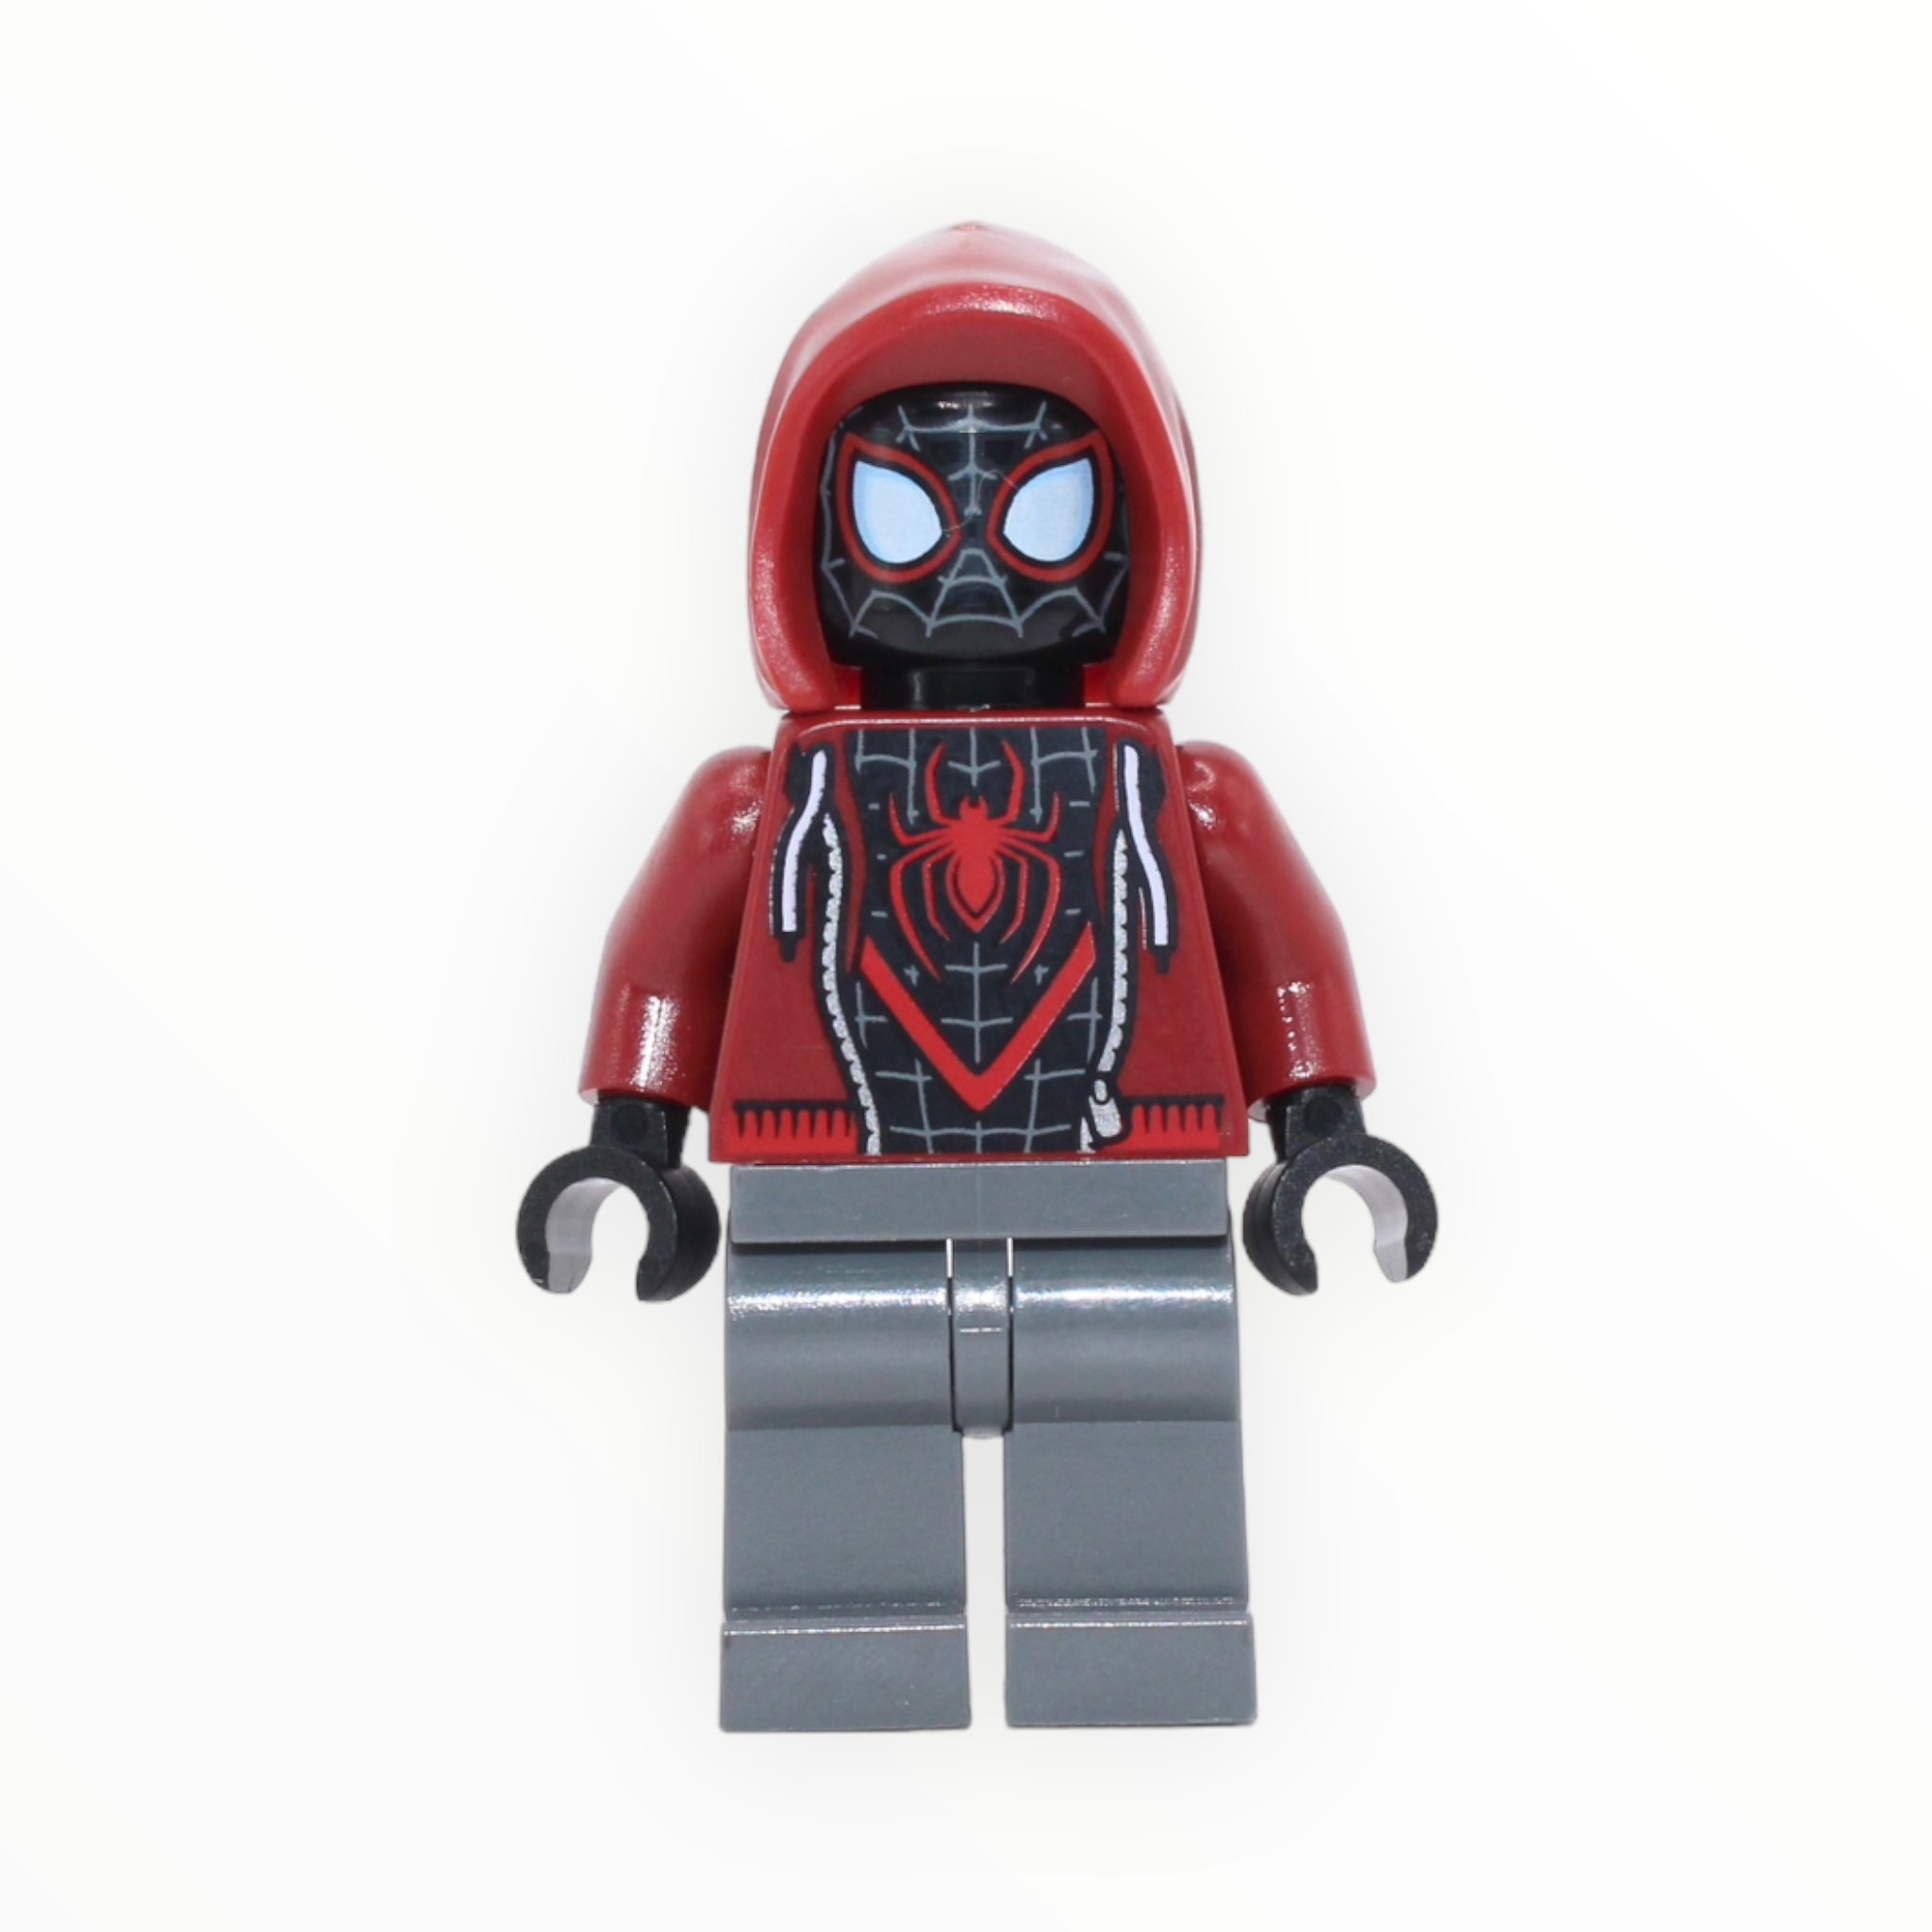 Spider-Man Miles Morales (dark red hood, jacket, plain legs)